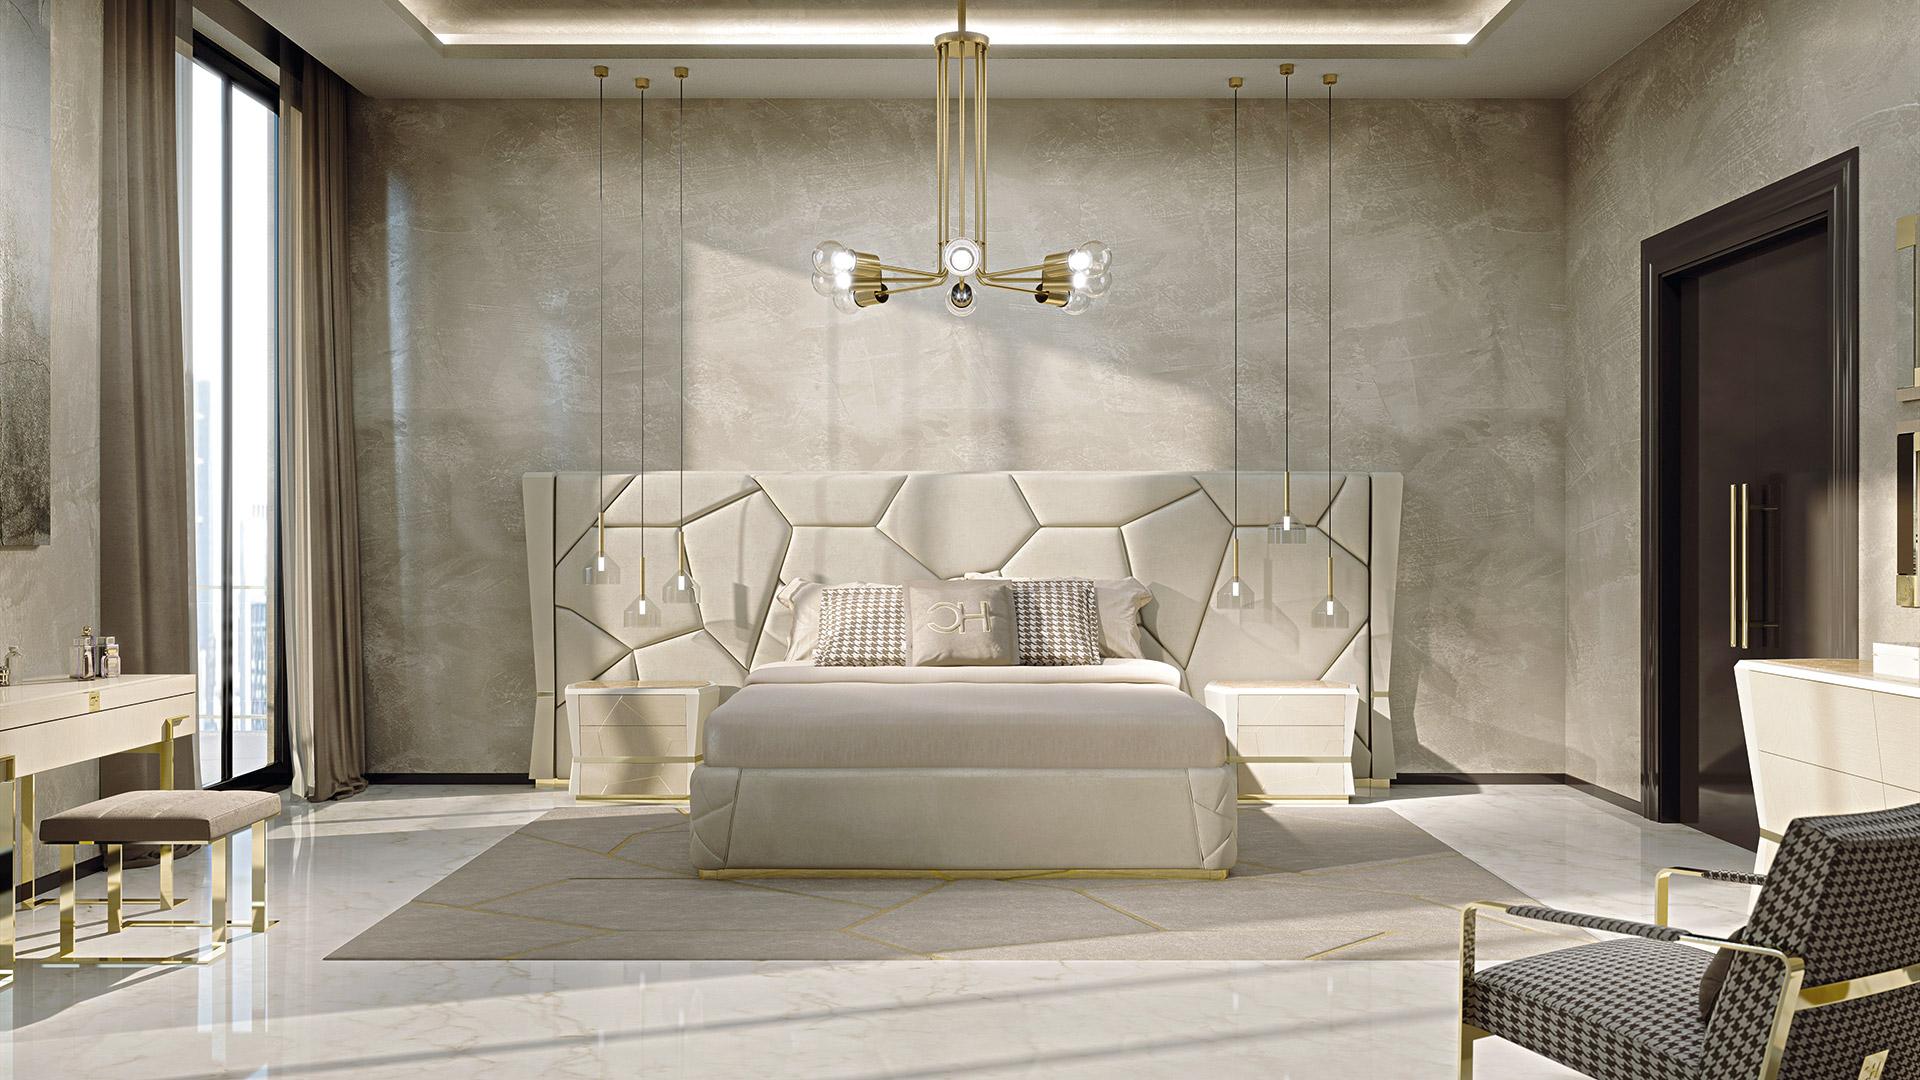 Großes gepolstertes Bett. Die Matratze misst 180 x 200 cm. Gekennzeichnet durch schöne rautenförmige Holzsäulen an den Seiten mit einem zentralen goldenen galvanischen Metallstreifen. Das Kopfteil wird durch erstaunliche unregelmäßige Nähte